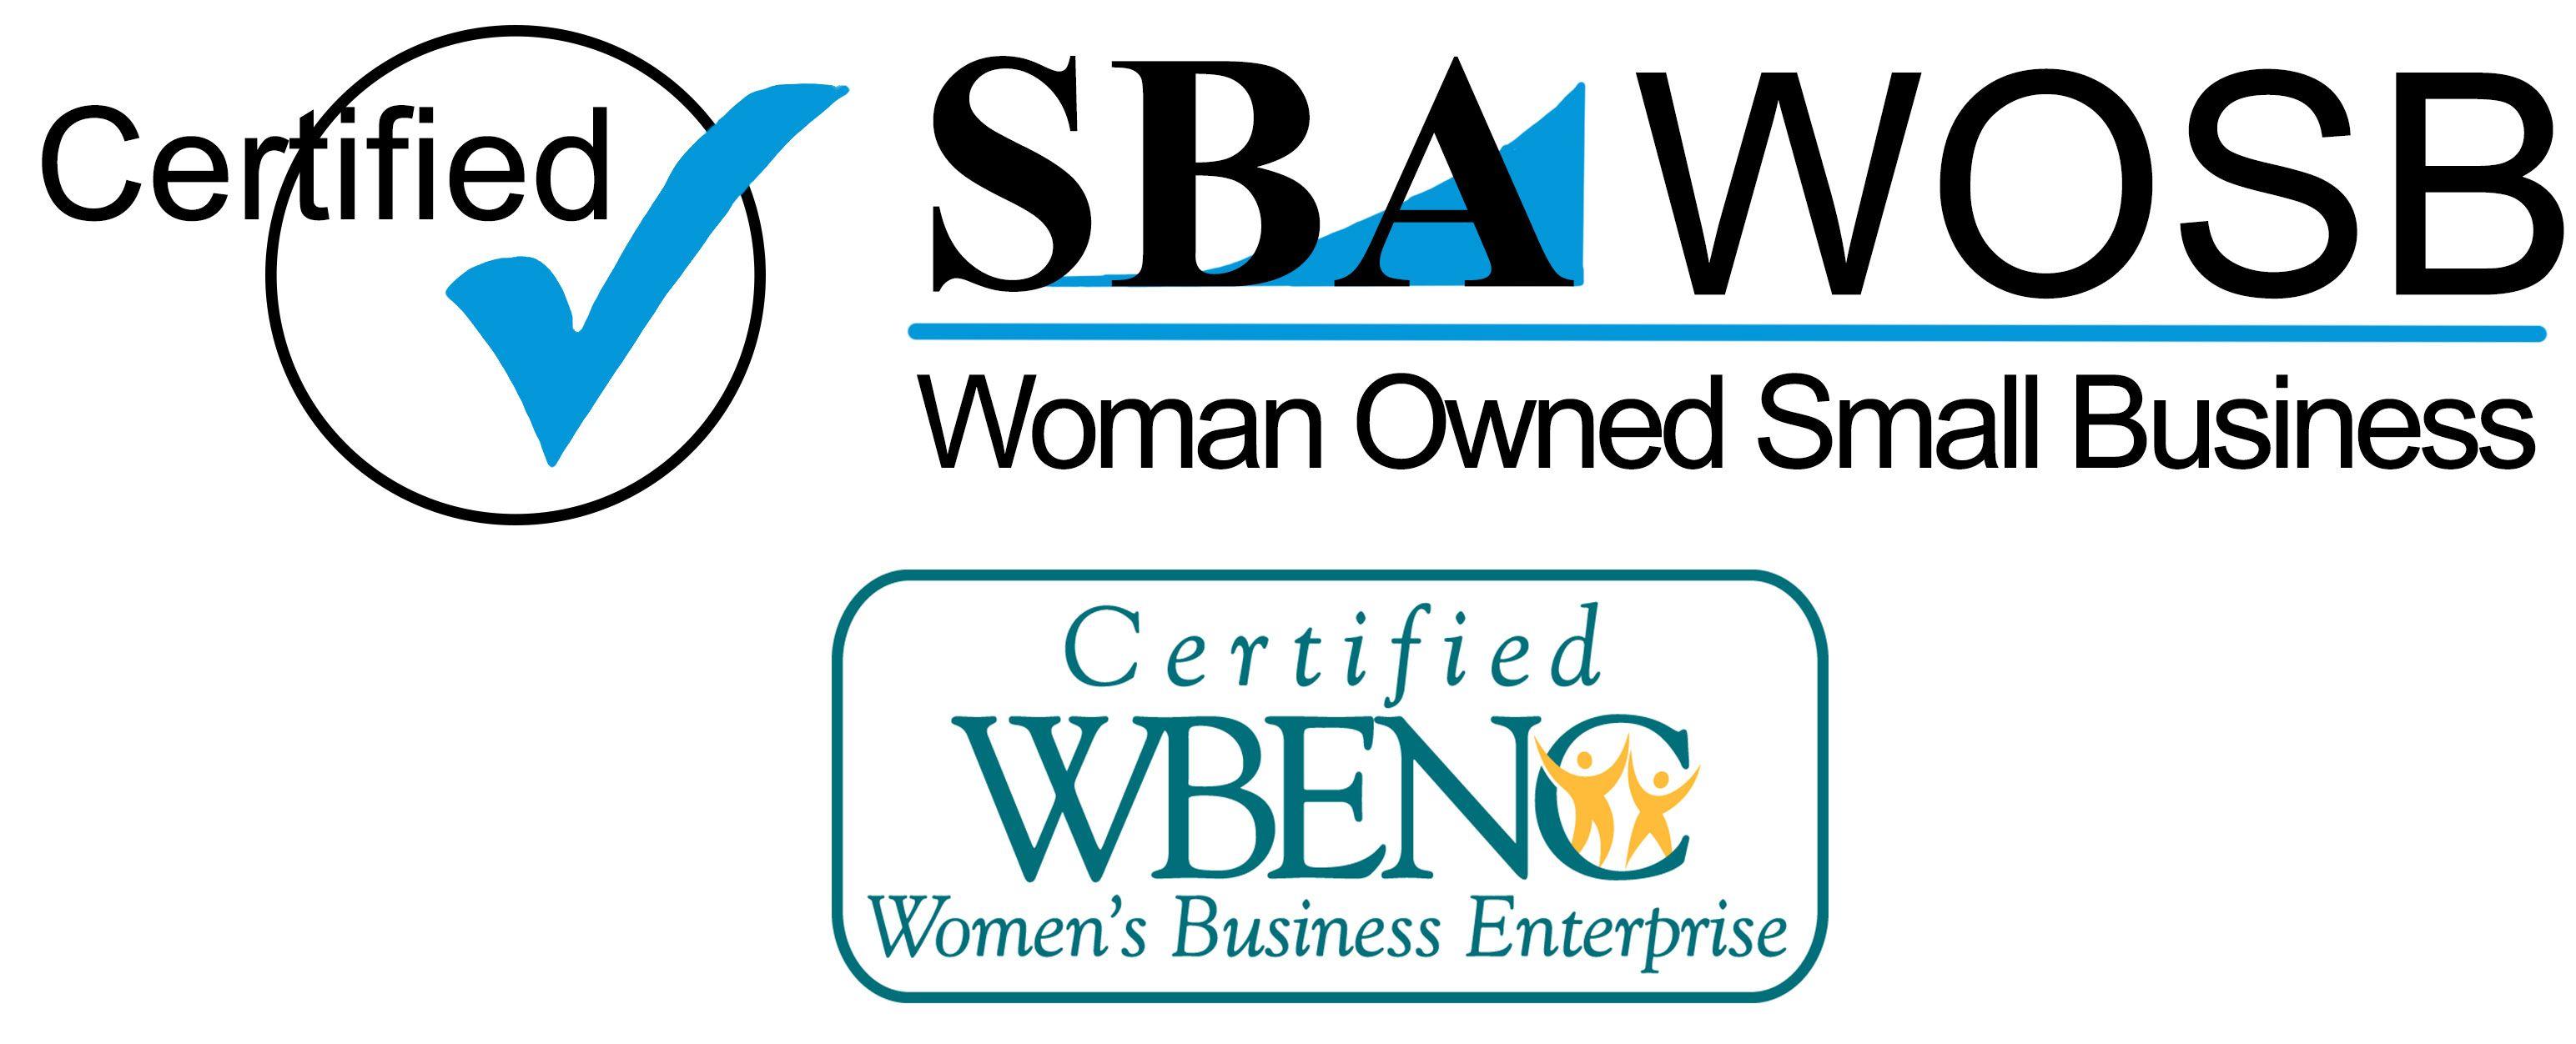 Wosb Logo - WOSB WBENC_SBA_LOGO21 Health Services